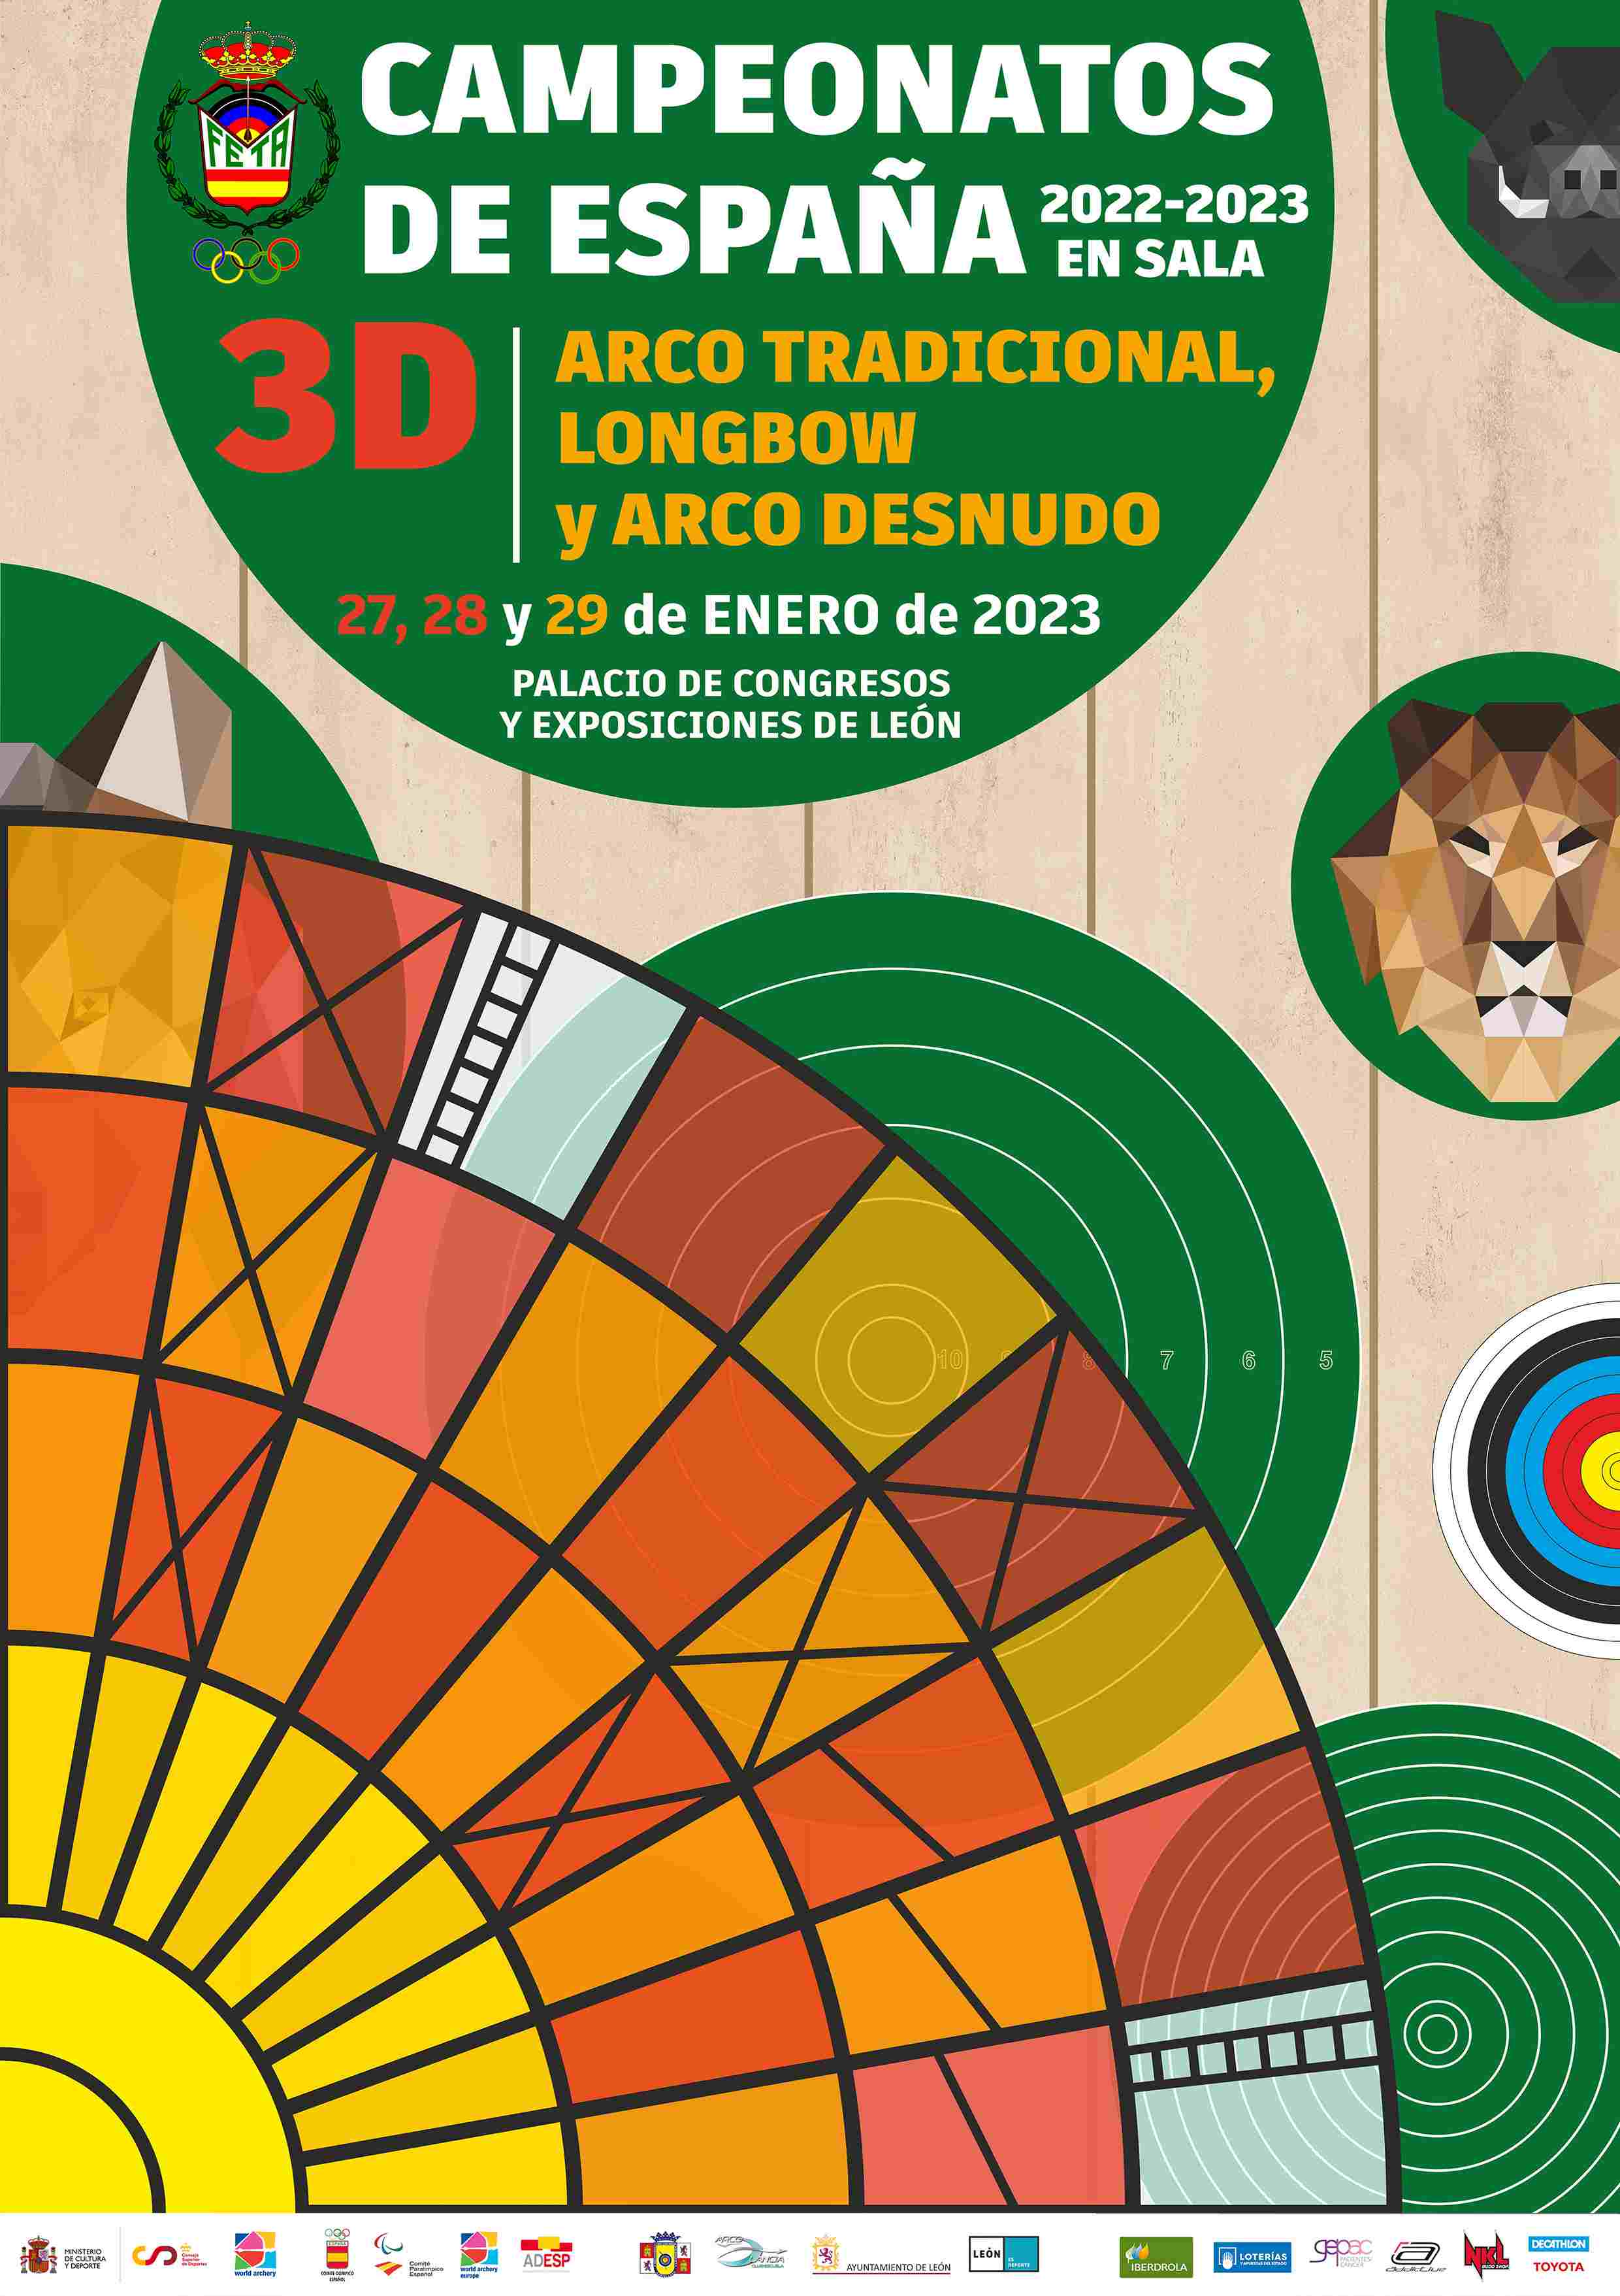 CAMPEONATOS DE ESPAÑA 3D Y ARCO TRADICIONAL, ARCO DESNUDO Y LONGBOW EN SALA - LEÓN 2023 - Inscríbete